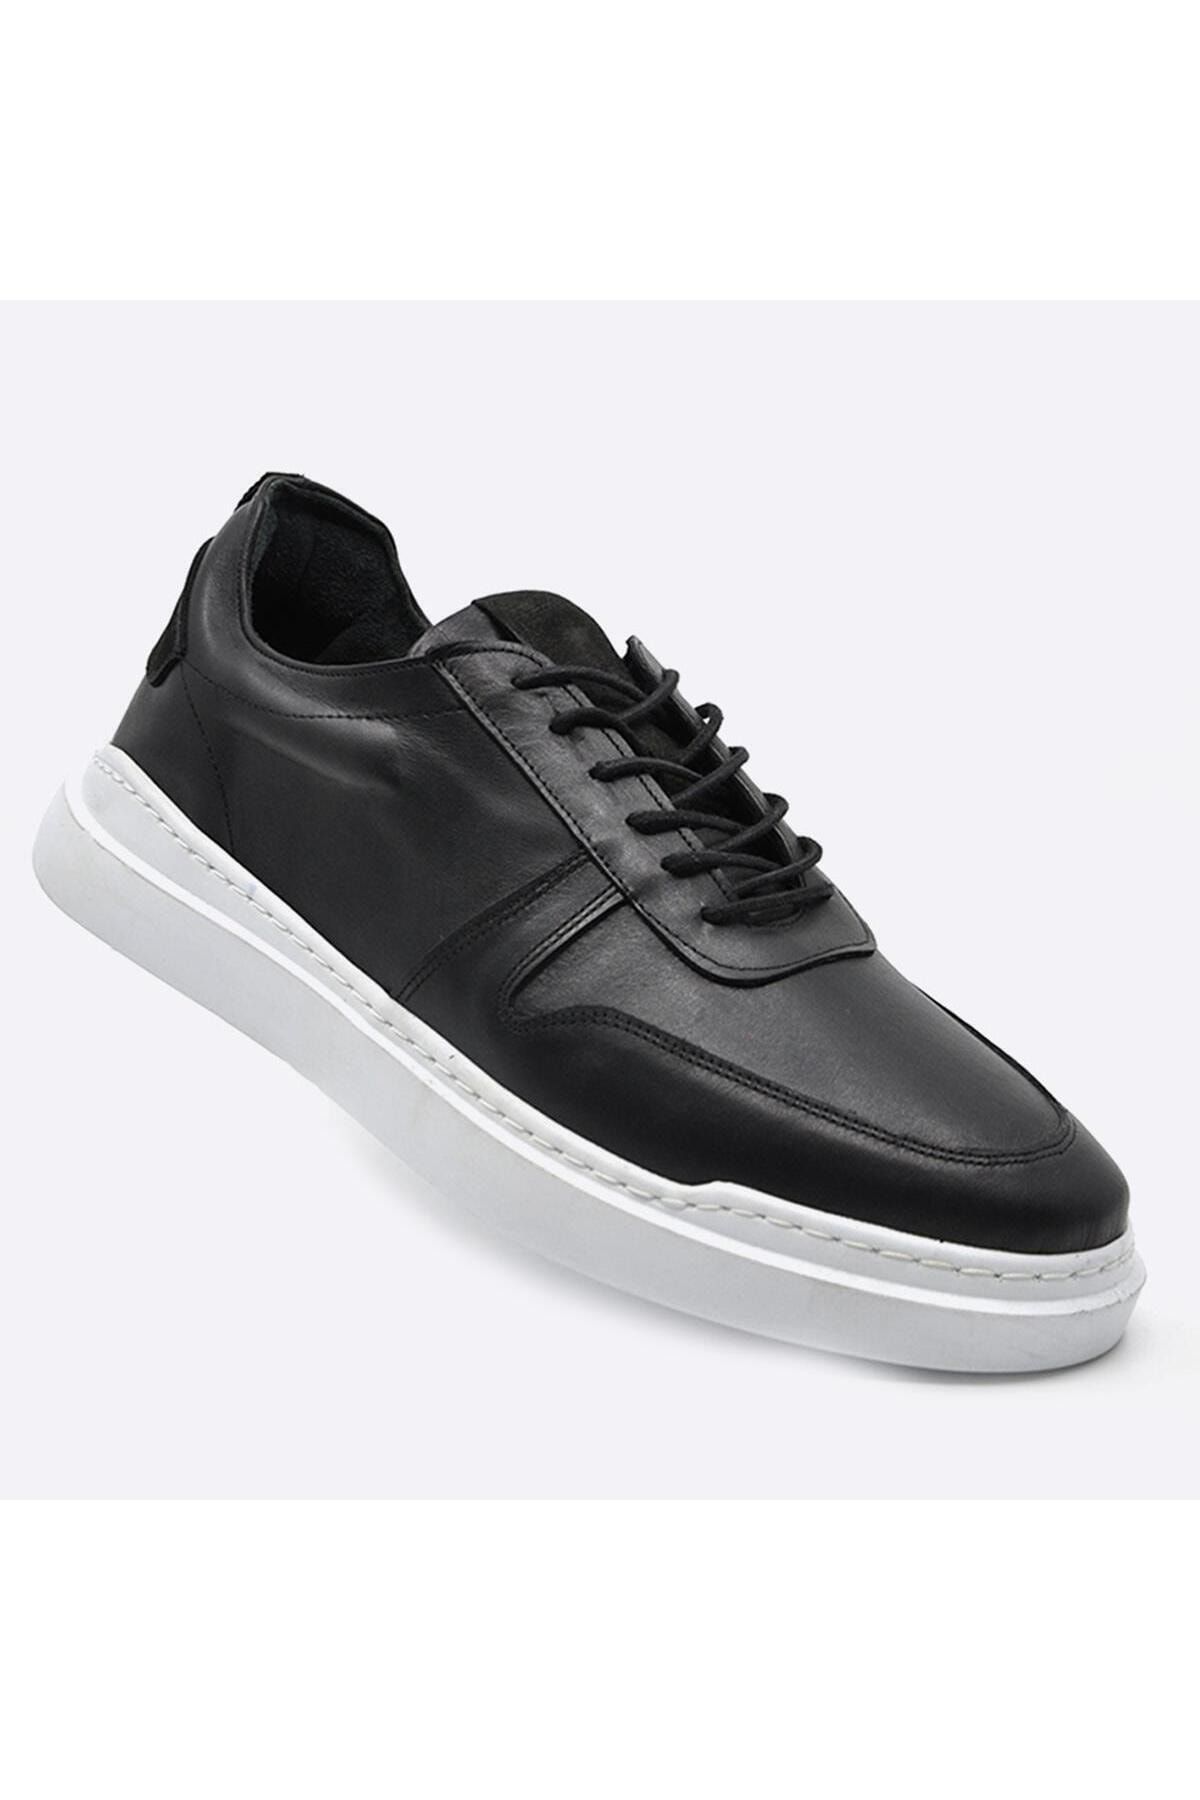 Fosco Hakiki Deri Sneakers Siyah Erkek Ayakkabı 9889